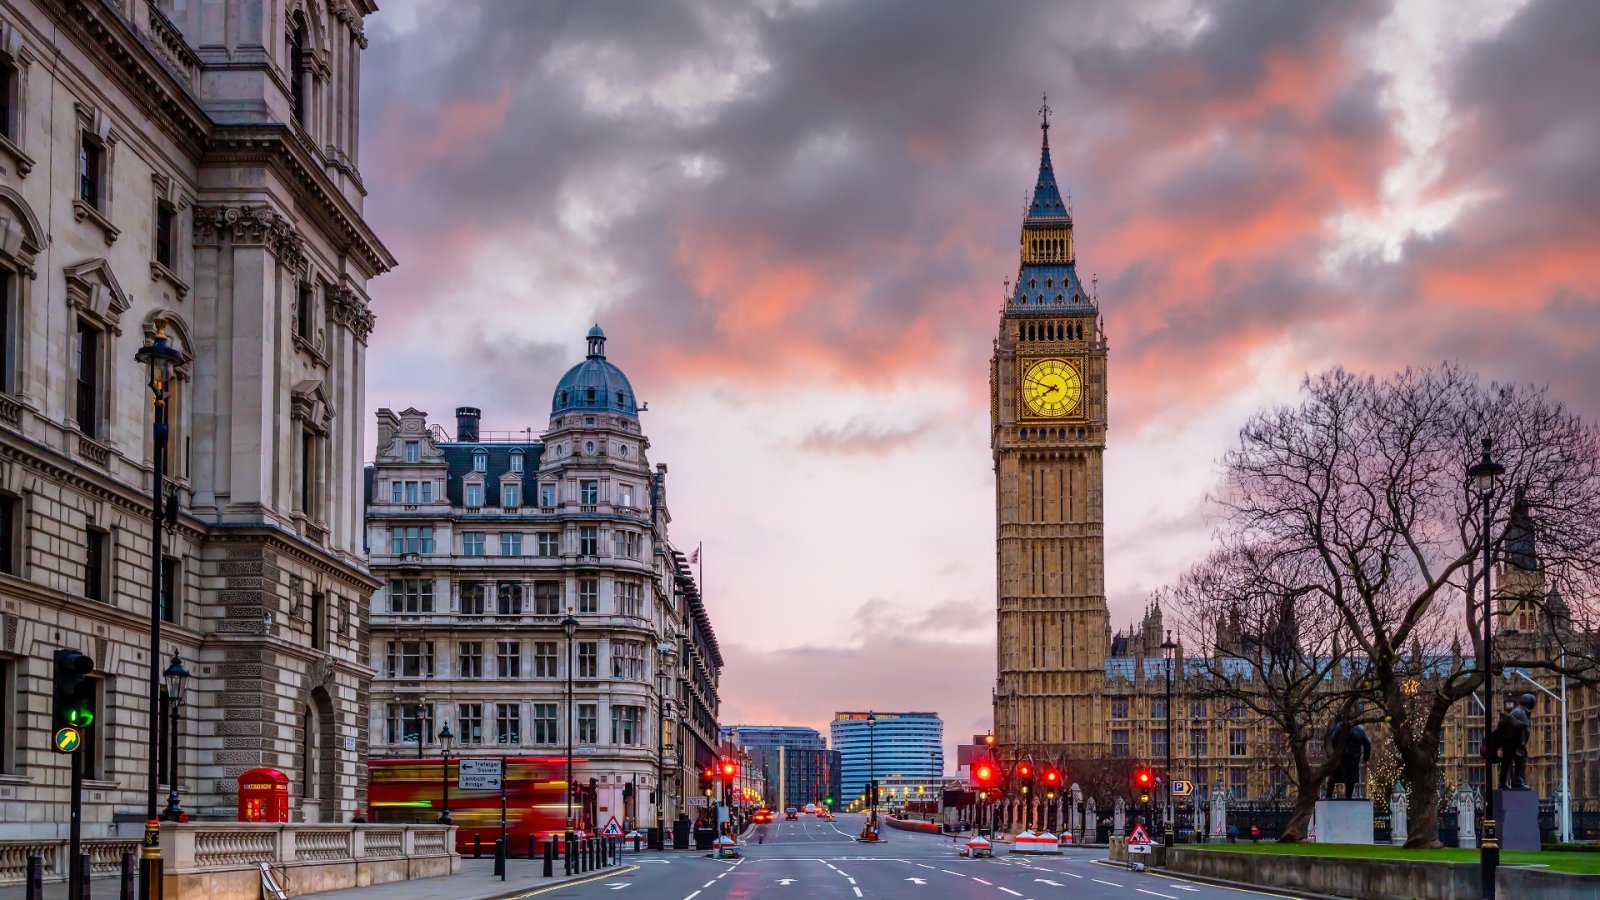 Leter du etter gratis ting å gjøre i London? Her er 10 gratis aktiviteter i Storbritannias hovedstad